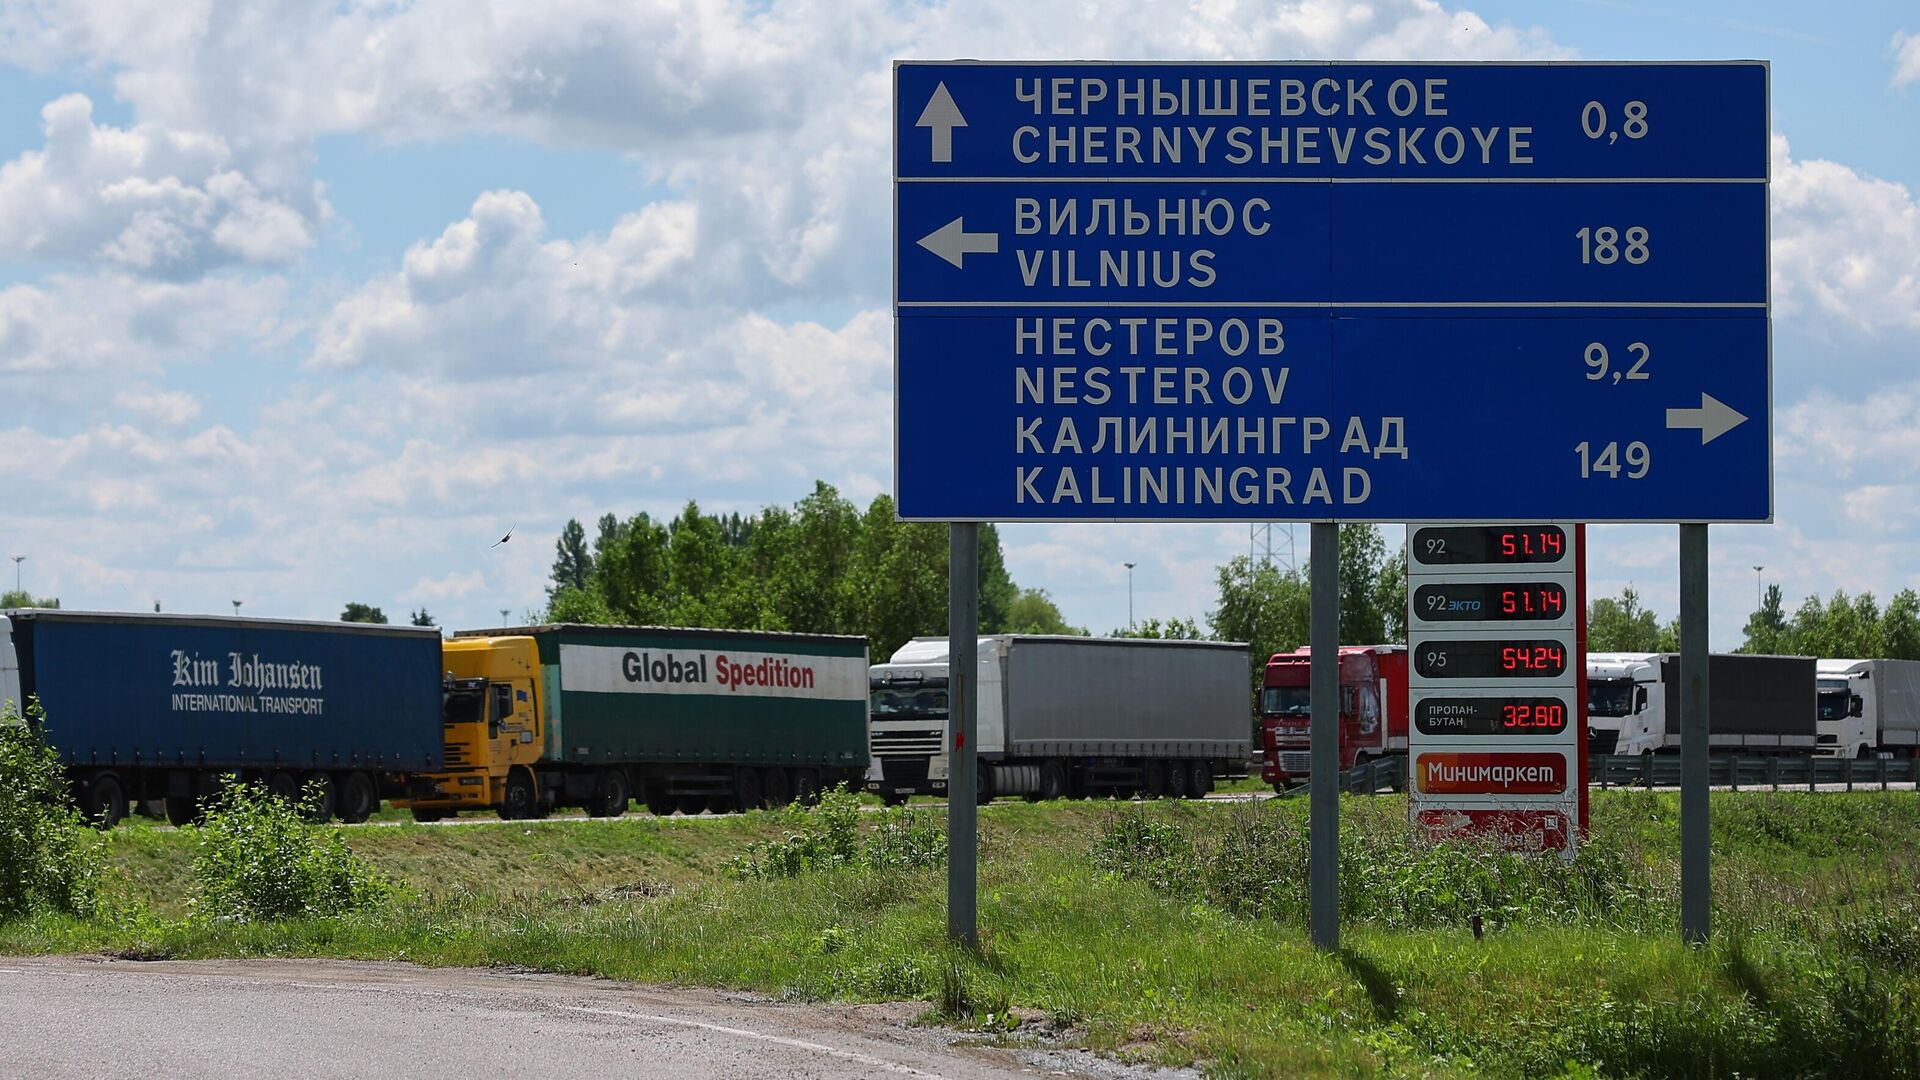 В Литве заявили, что вопрос транзита в Калининград не имеет к ним отношения